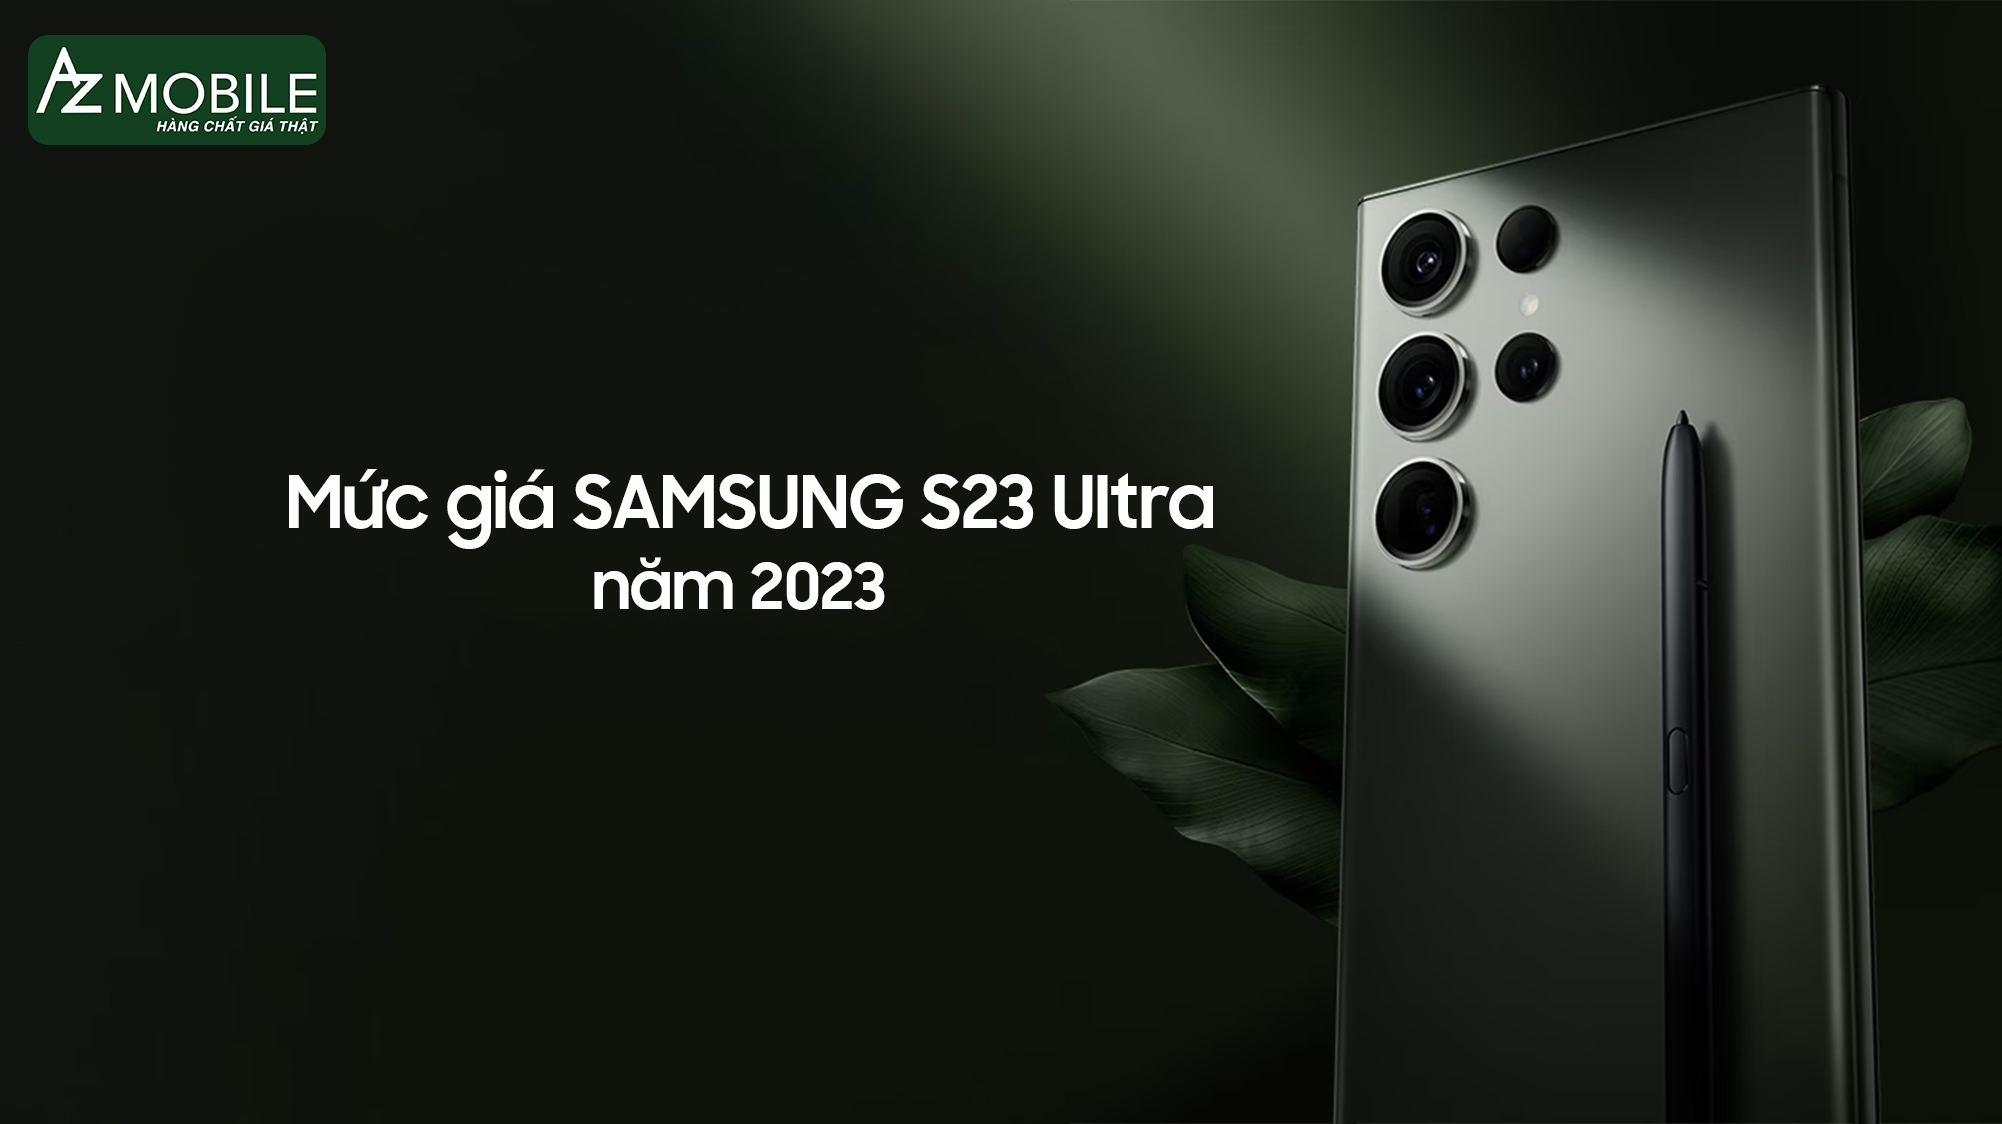 Samsung s23 ultra giá bao nhiêu trong năm 2023?